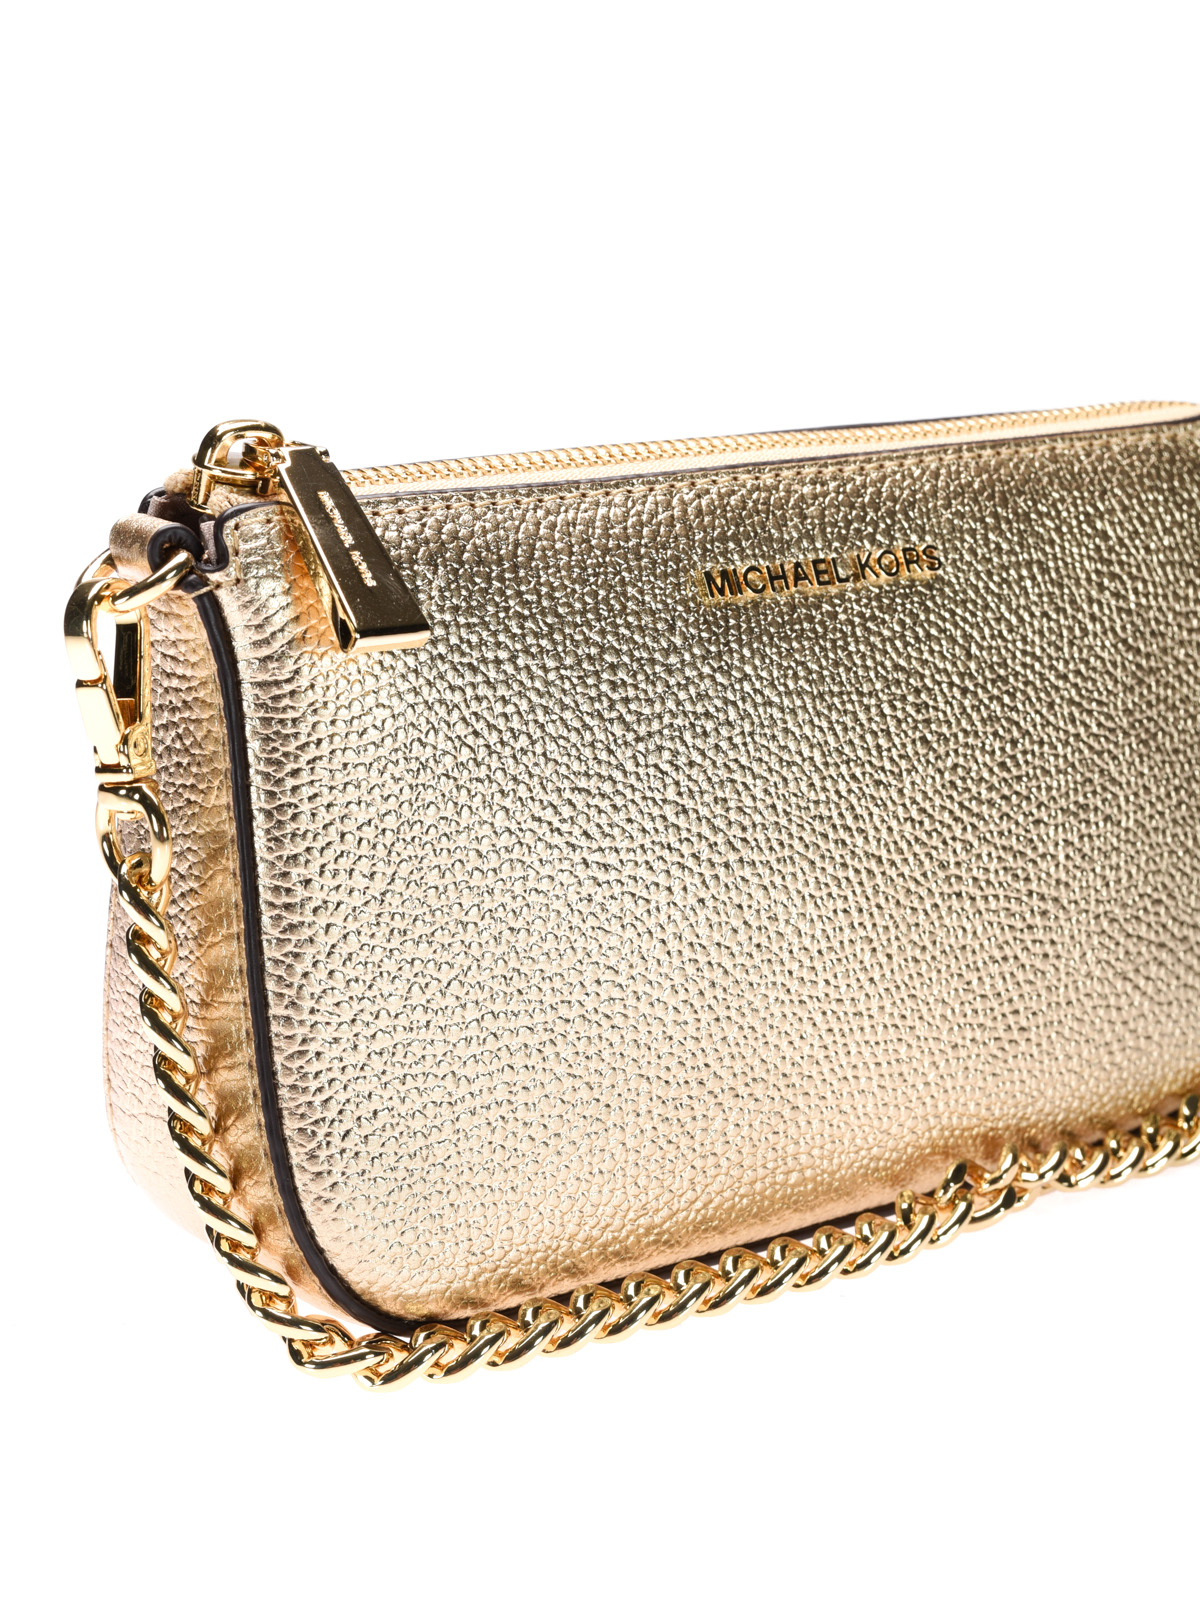 Wallets & purses Michael Kors - Jet Set pale gold wristlet purse ...